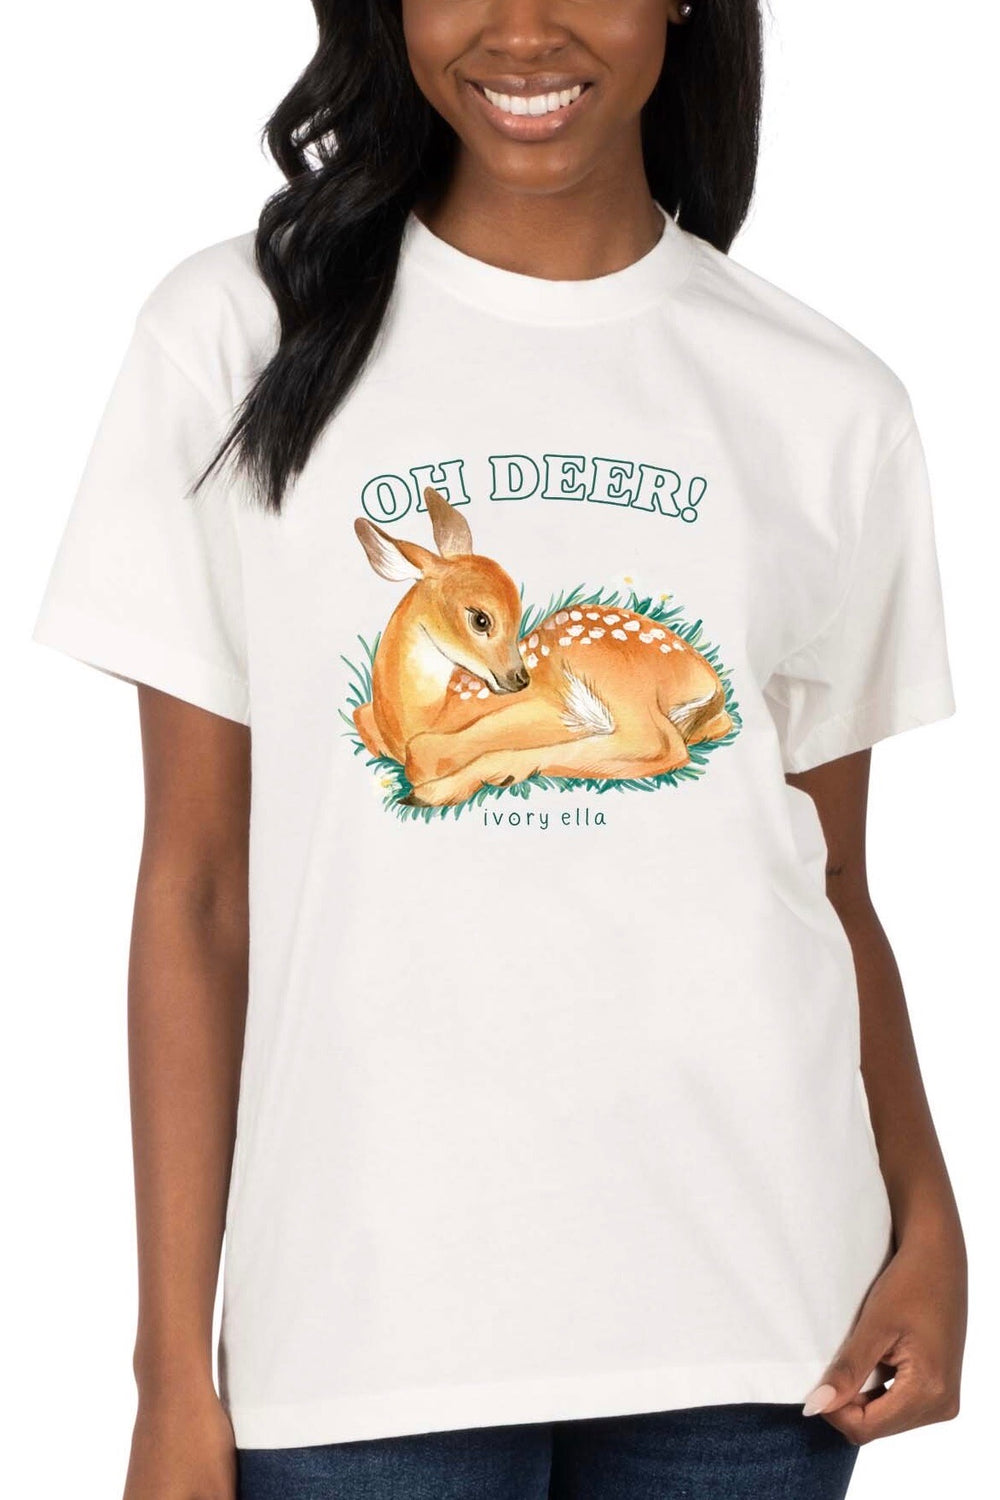 Oh Deer! Unisex T-Shirt